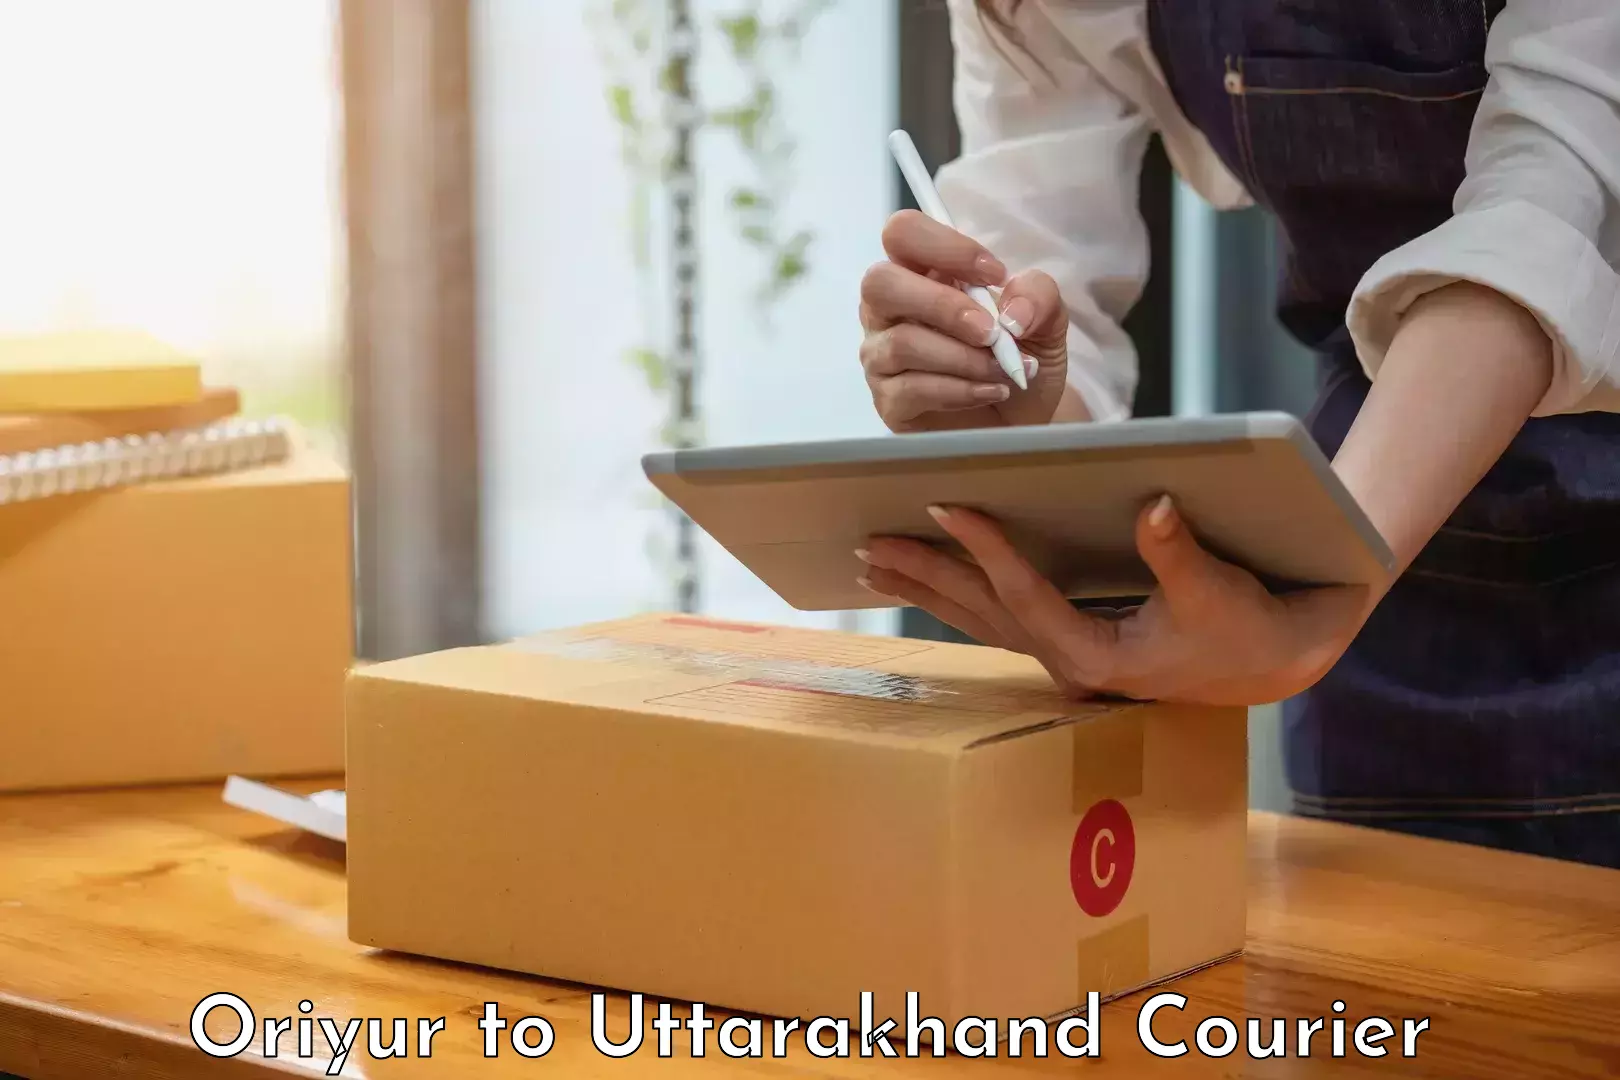 Full-service courier options Oriyur to Gopeshwar